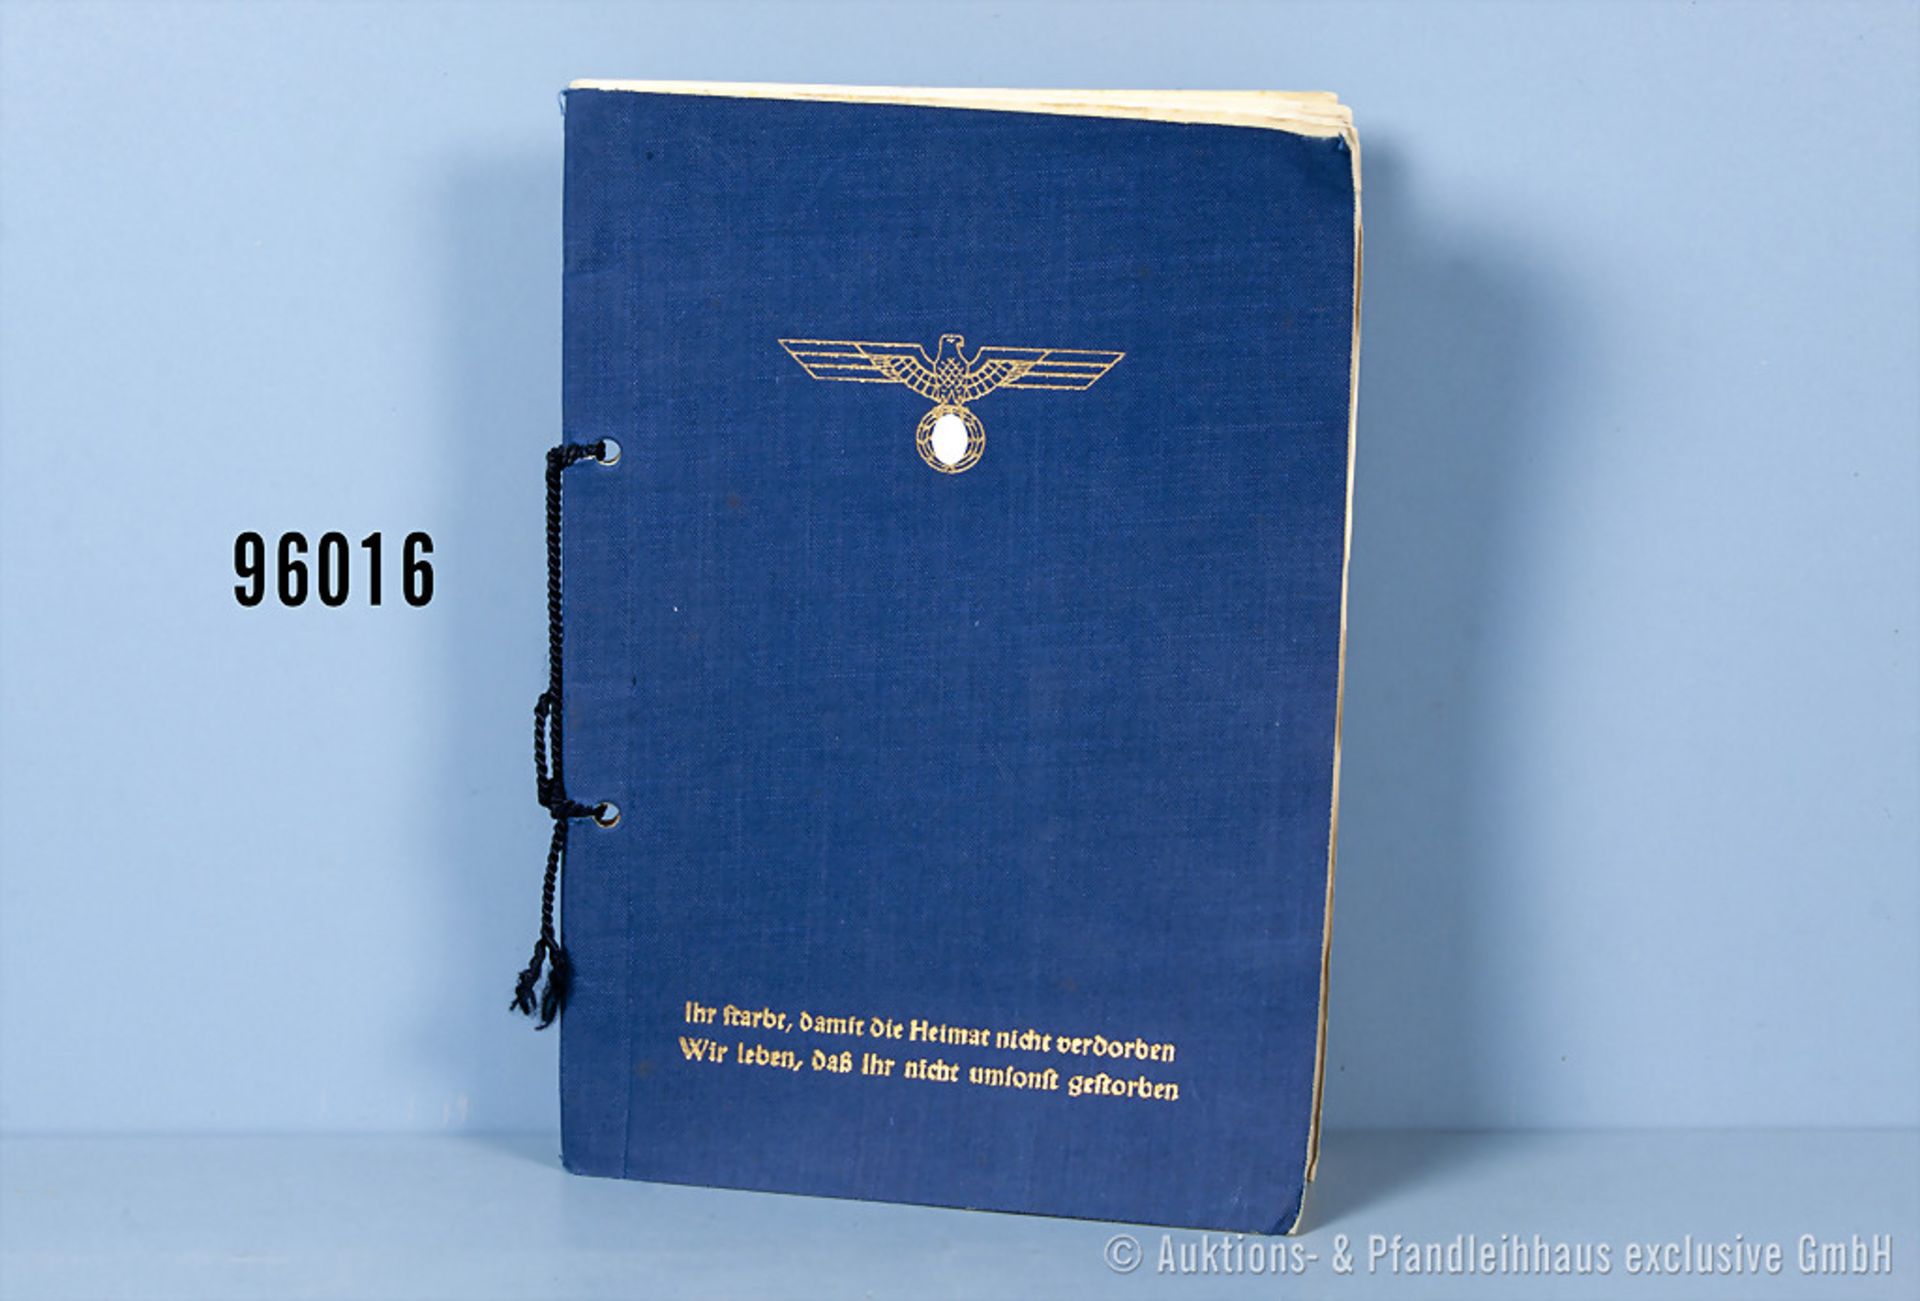 Kalender der Kriegsmarine für das Jahr 1945, auf dem Vorsatzblatt "Den Hinterbliebenen der